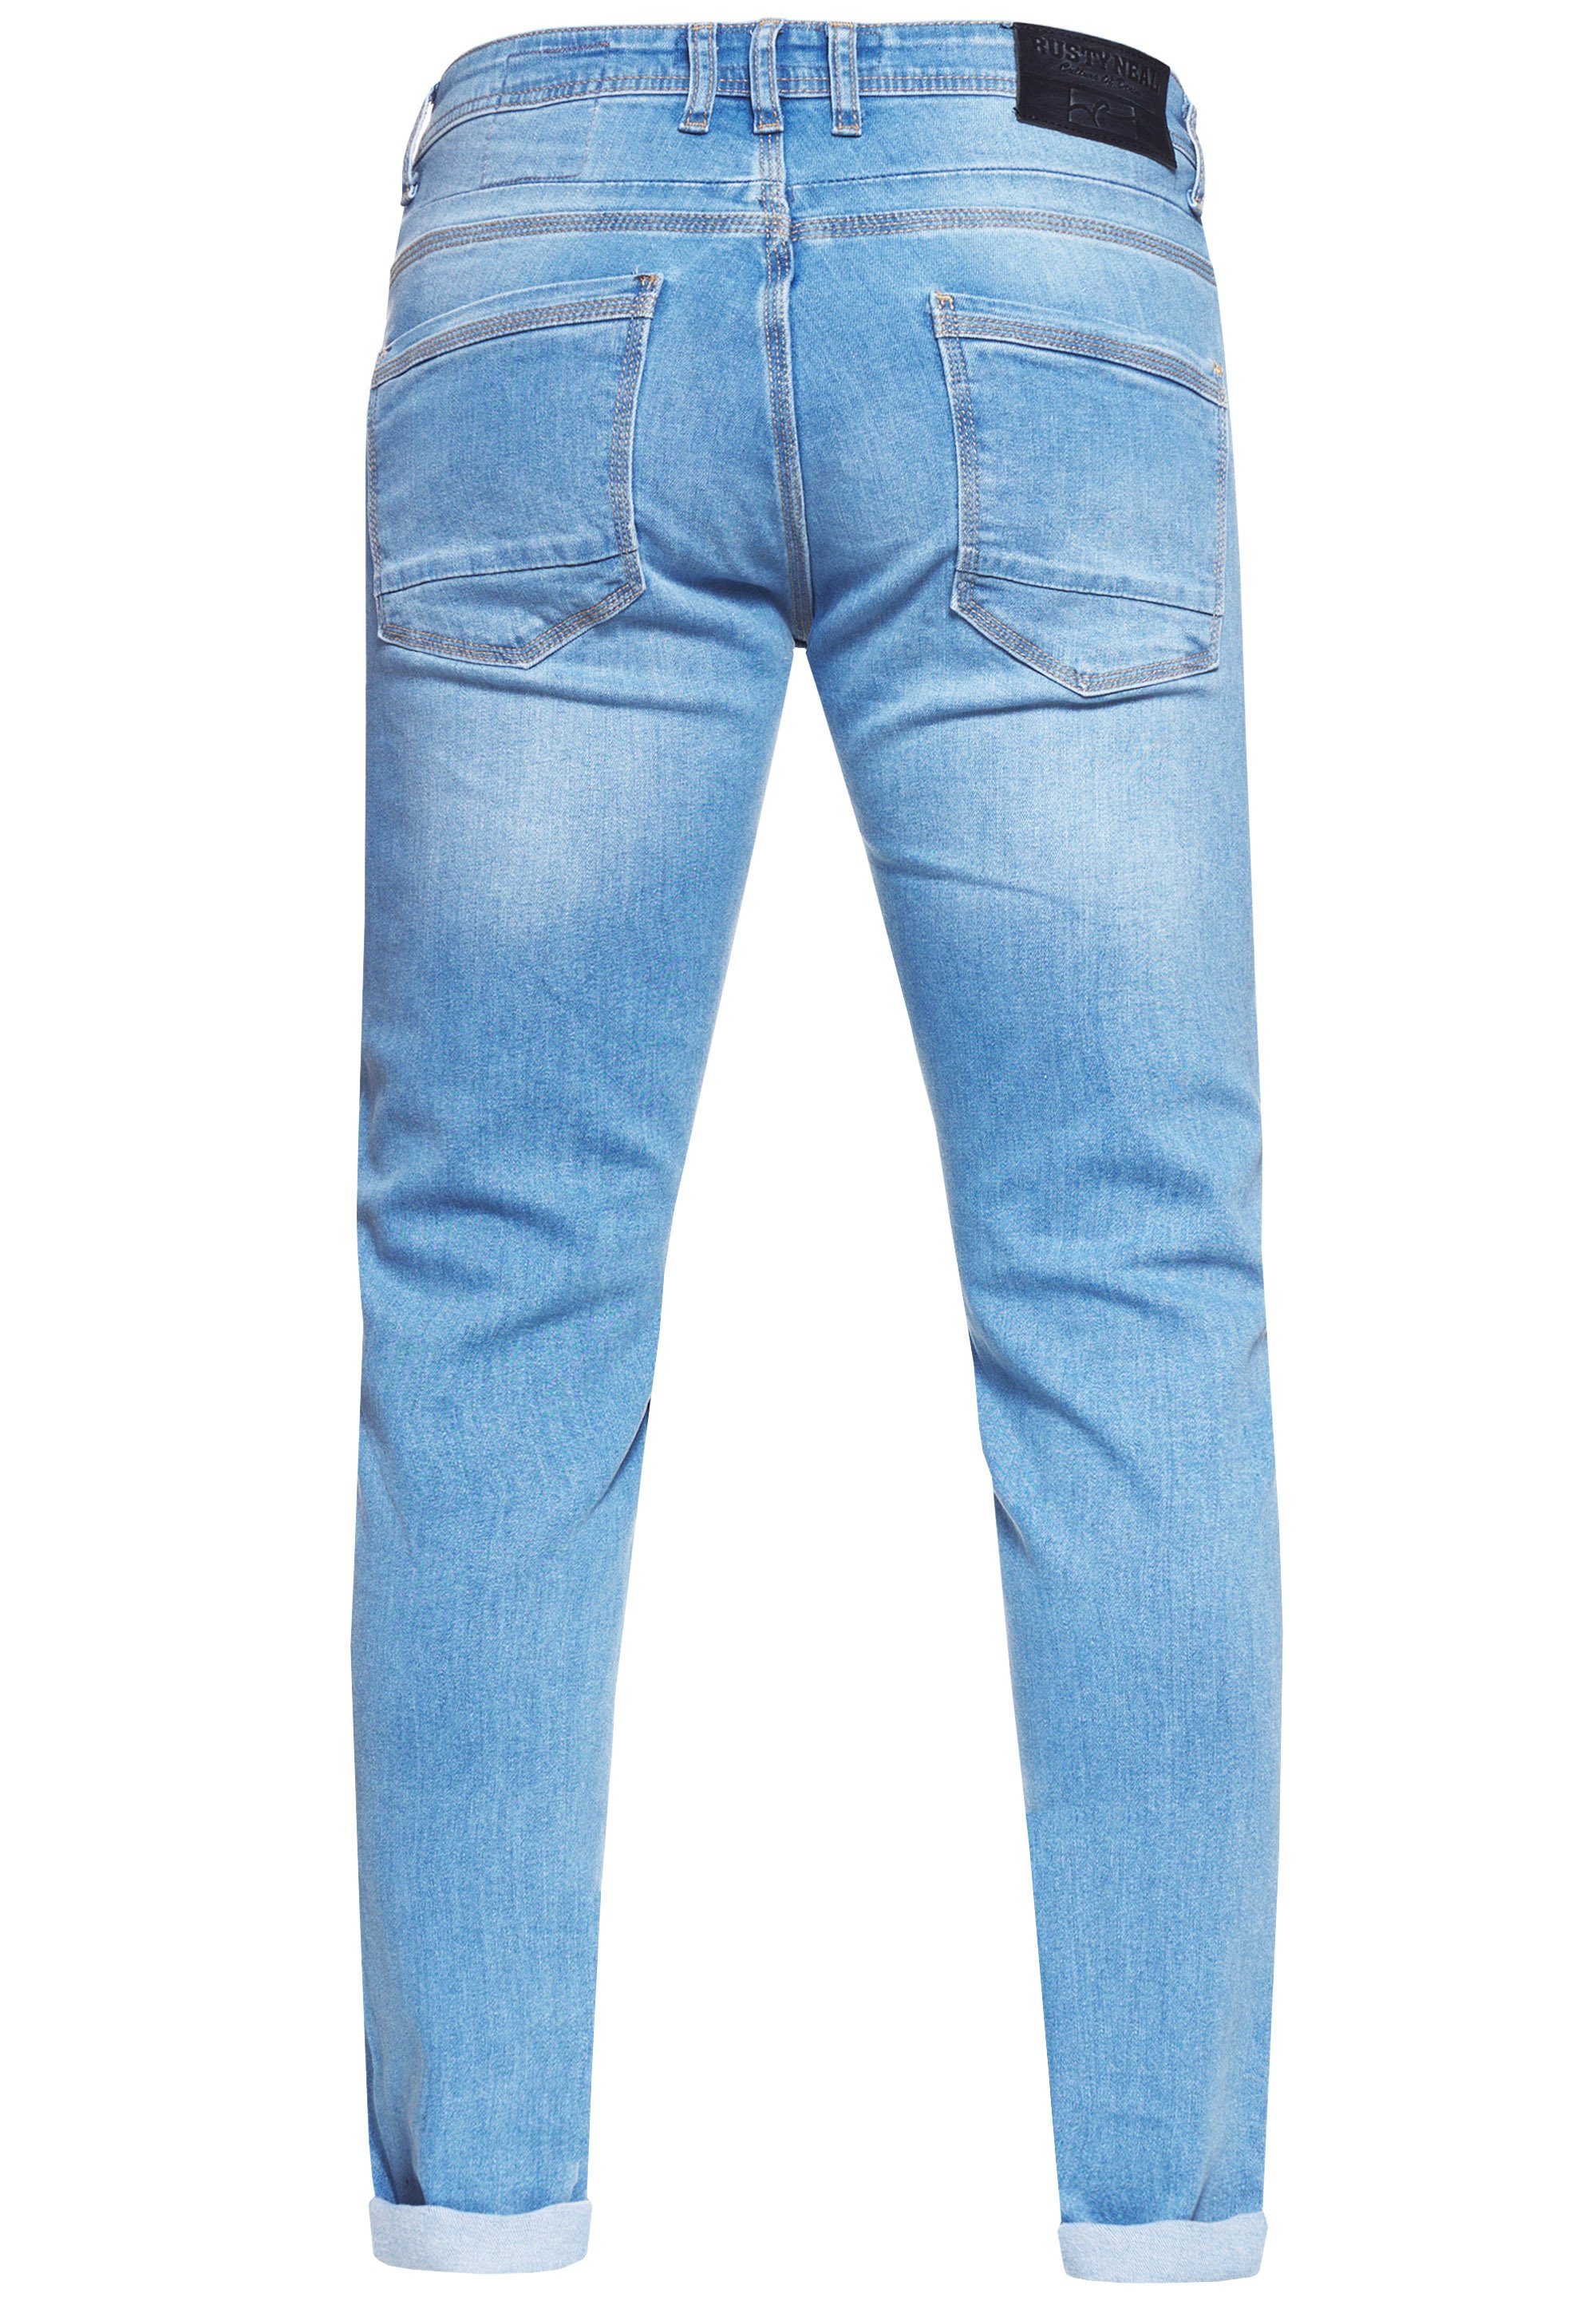 Rusty Neal Straight-Jeans blau im 5-Pocket-Stil MELVIN klassischen